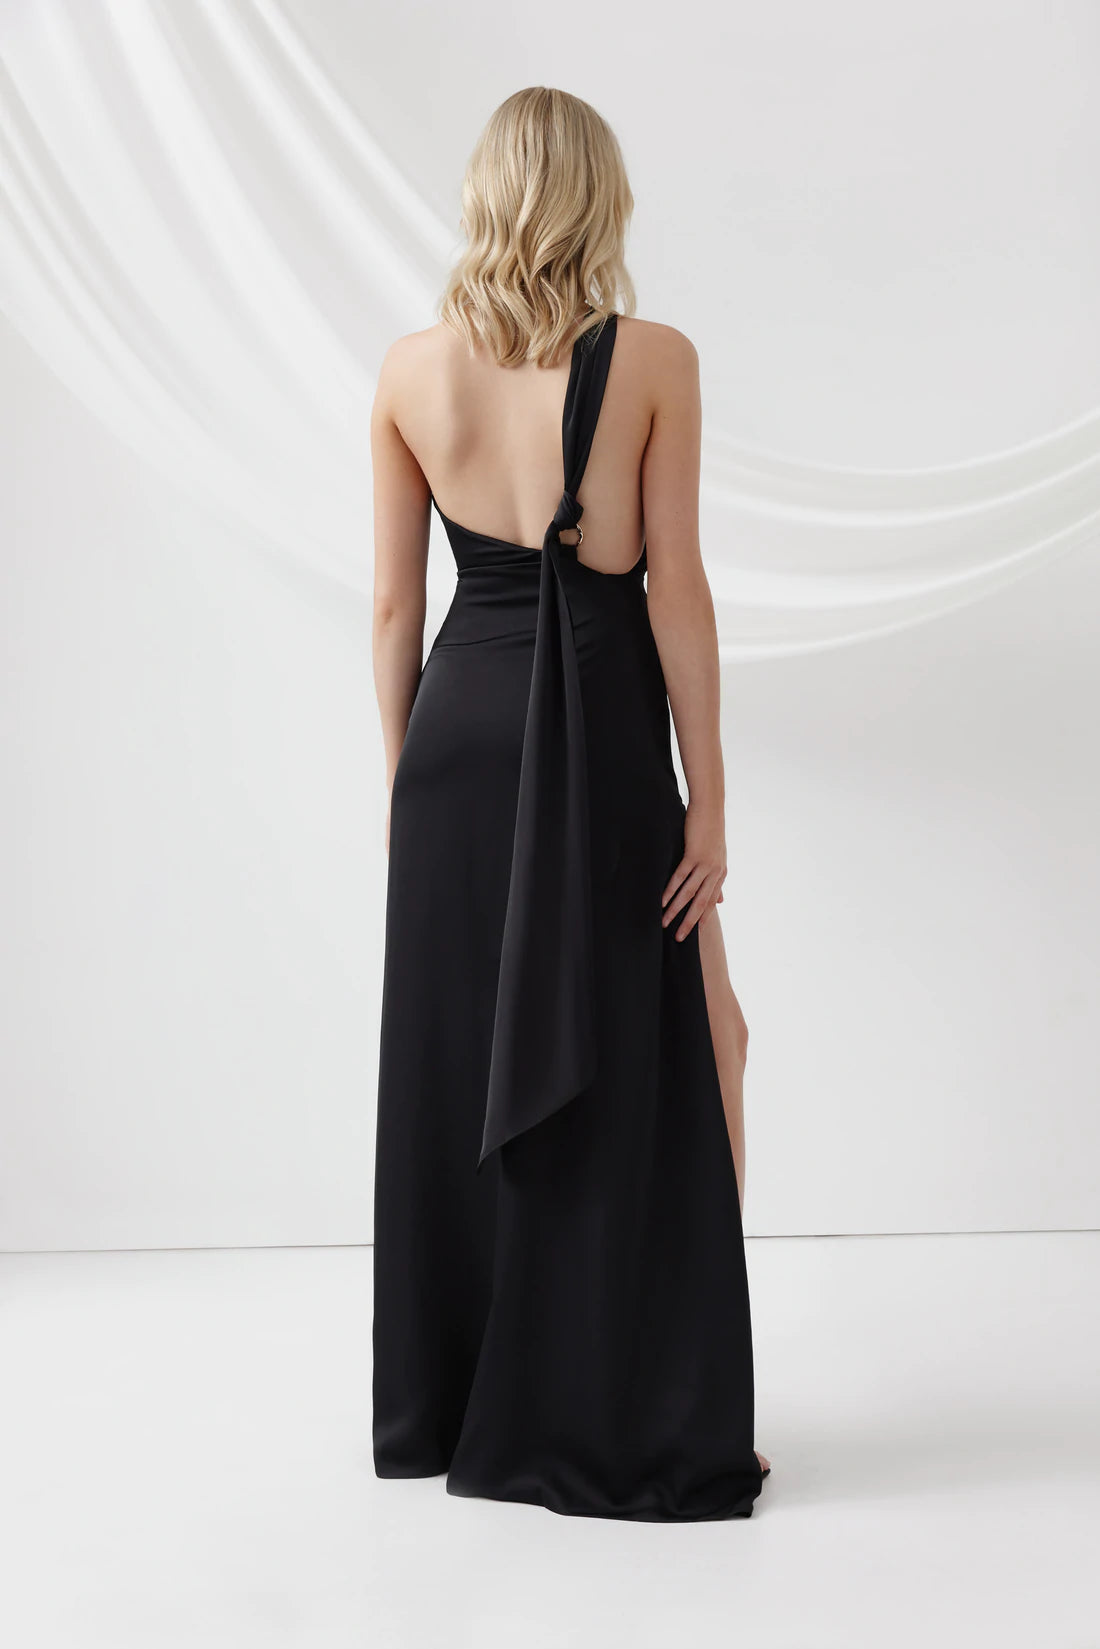 Lexi - Chianti Dress- Black